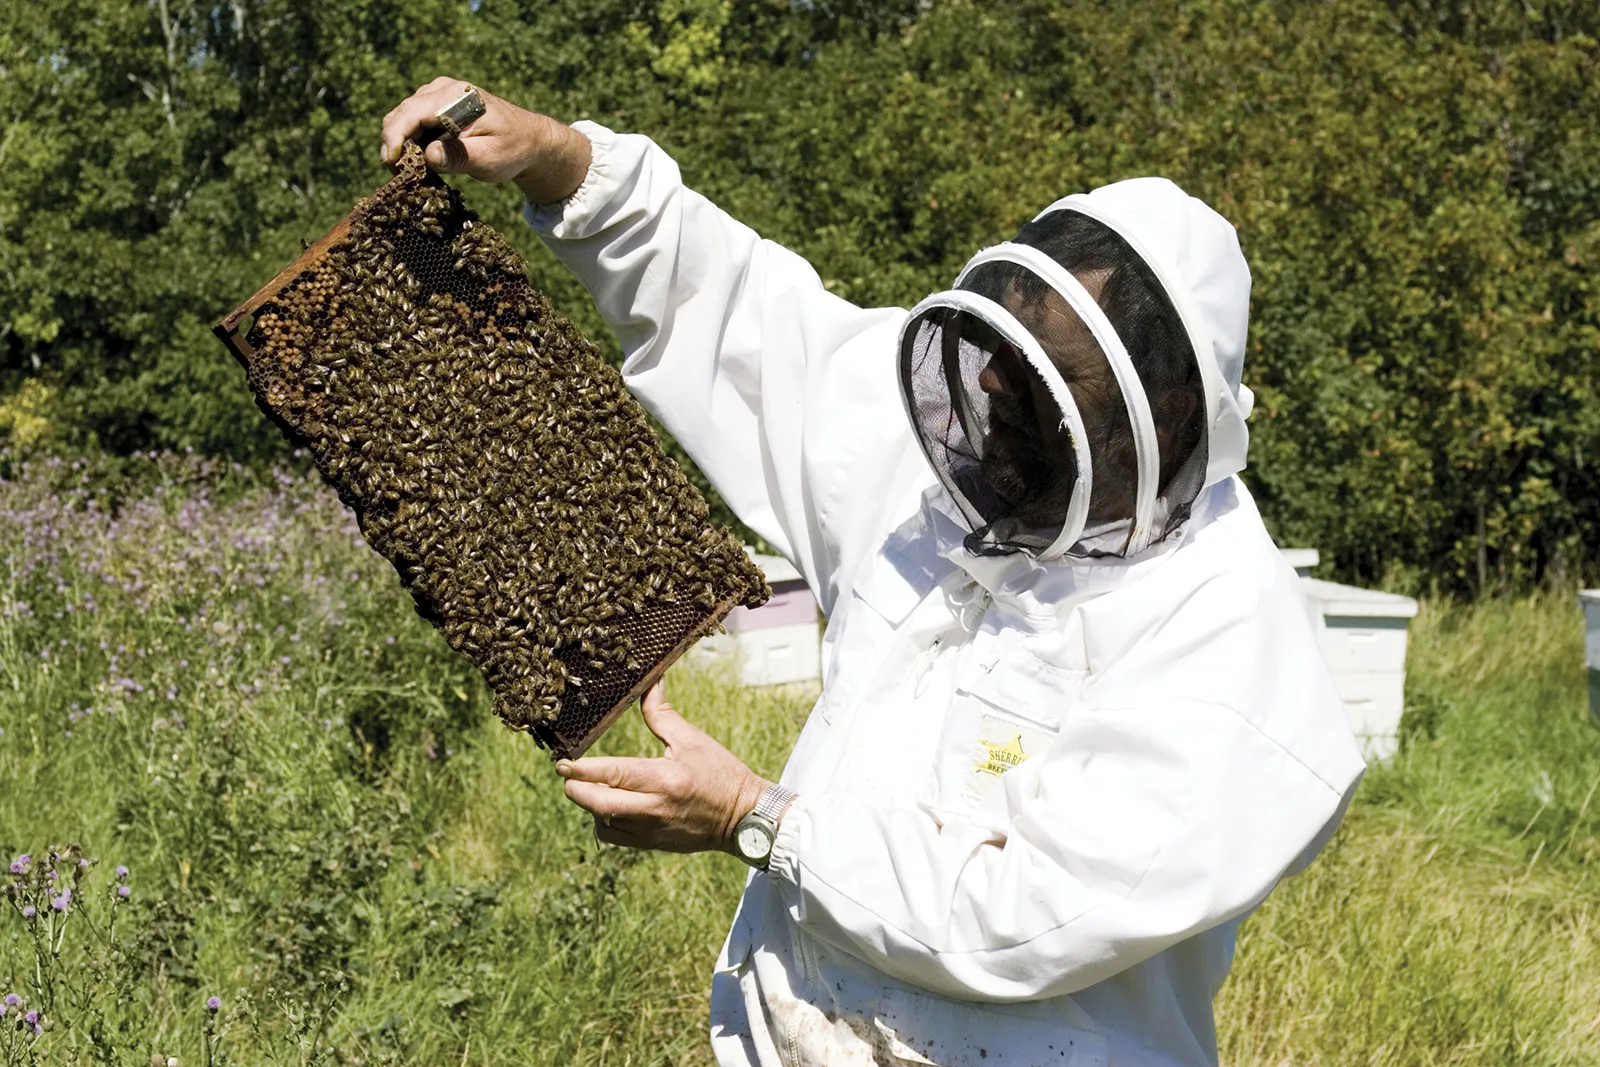 Business Idea: मधुमक्खी पालन से कमा सकते हैं लाखों रुपये सालाना, कम लागत में पाएं ज्यादा मुनाफा